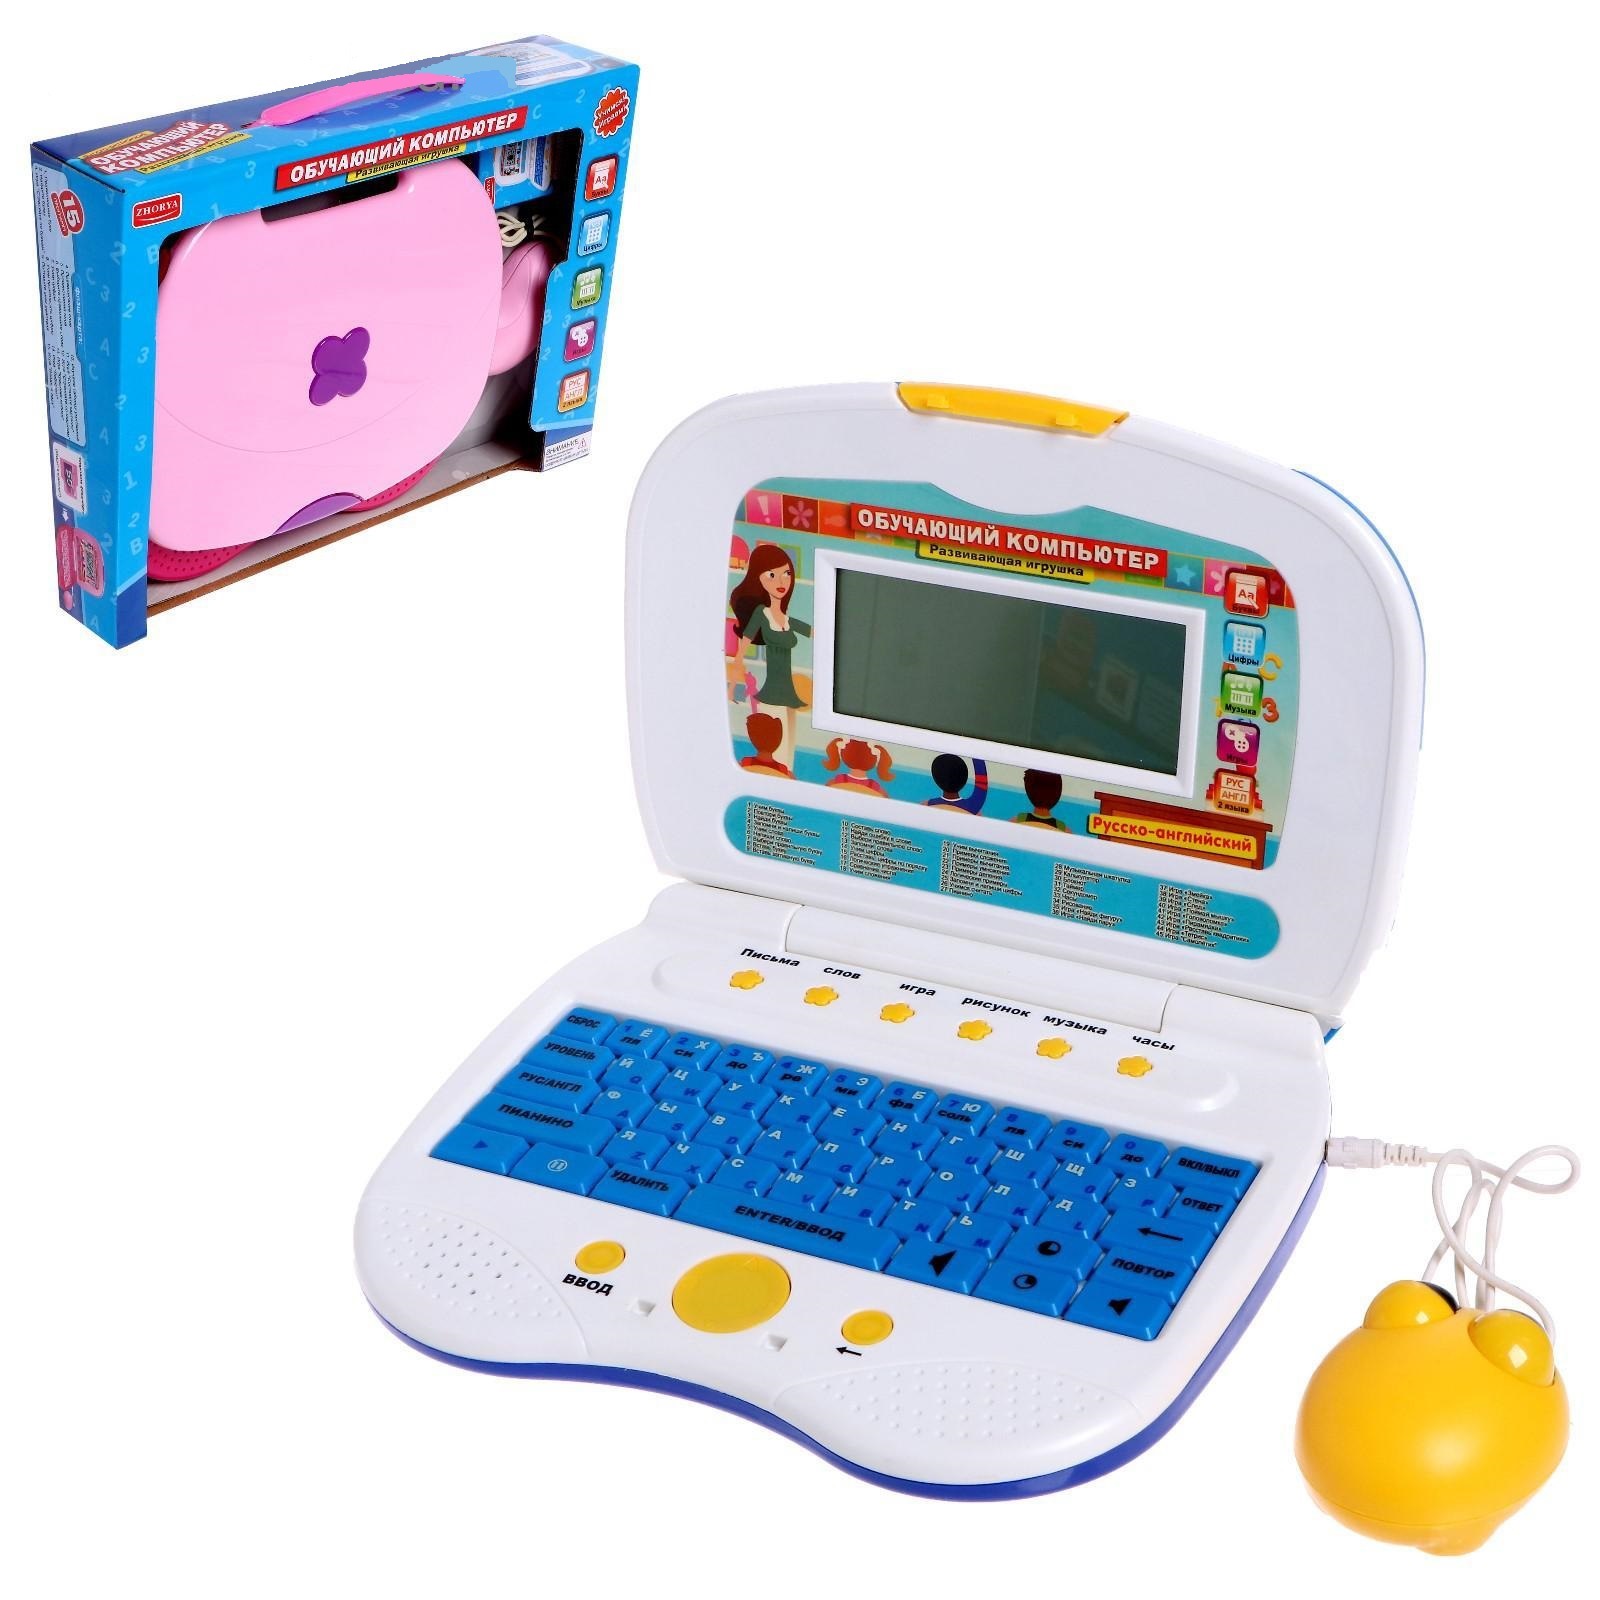 Компьютер для детей 3. Детский компьютер Joy Toy 7161. Обучающий компьютер "Winx" (Умка, pl-1596-1sim). Компьютер детский микс 5092359. Joy Toy компьютер обучающий.